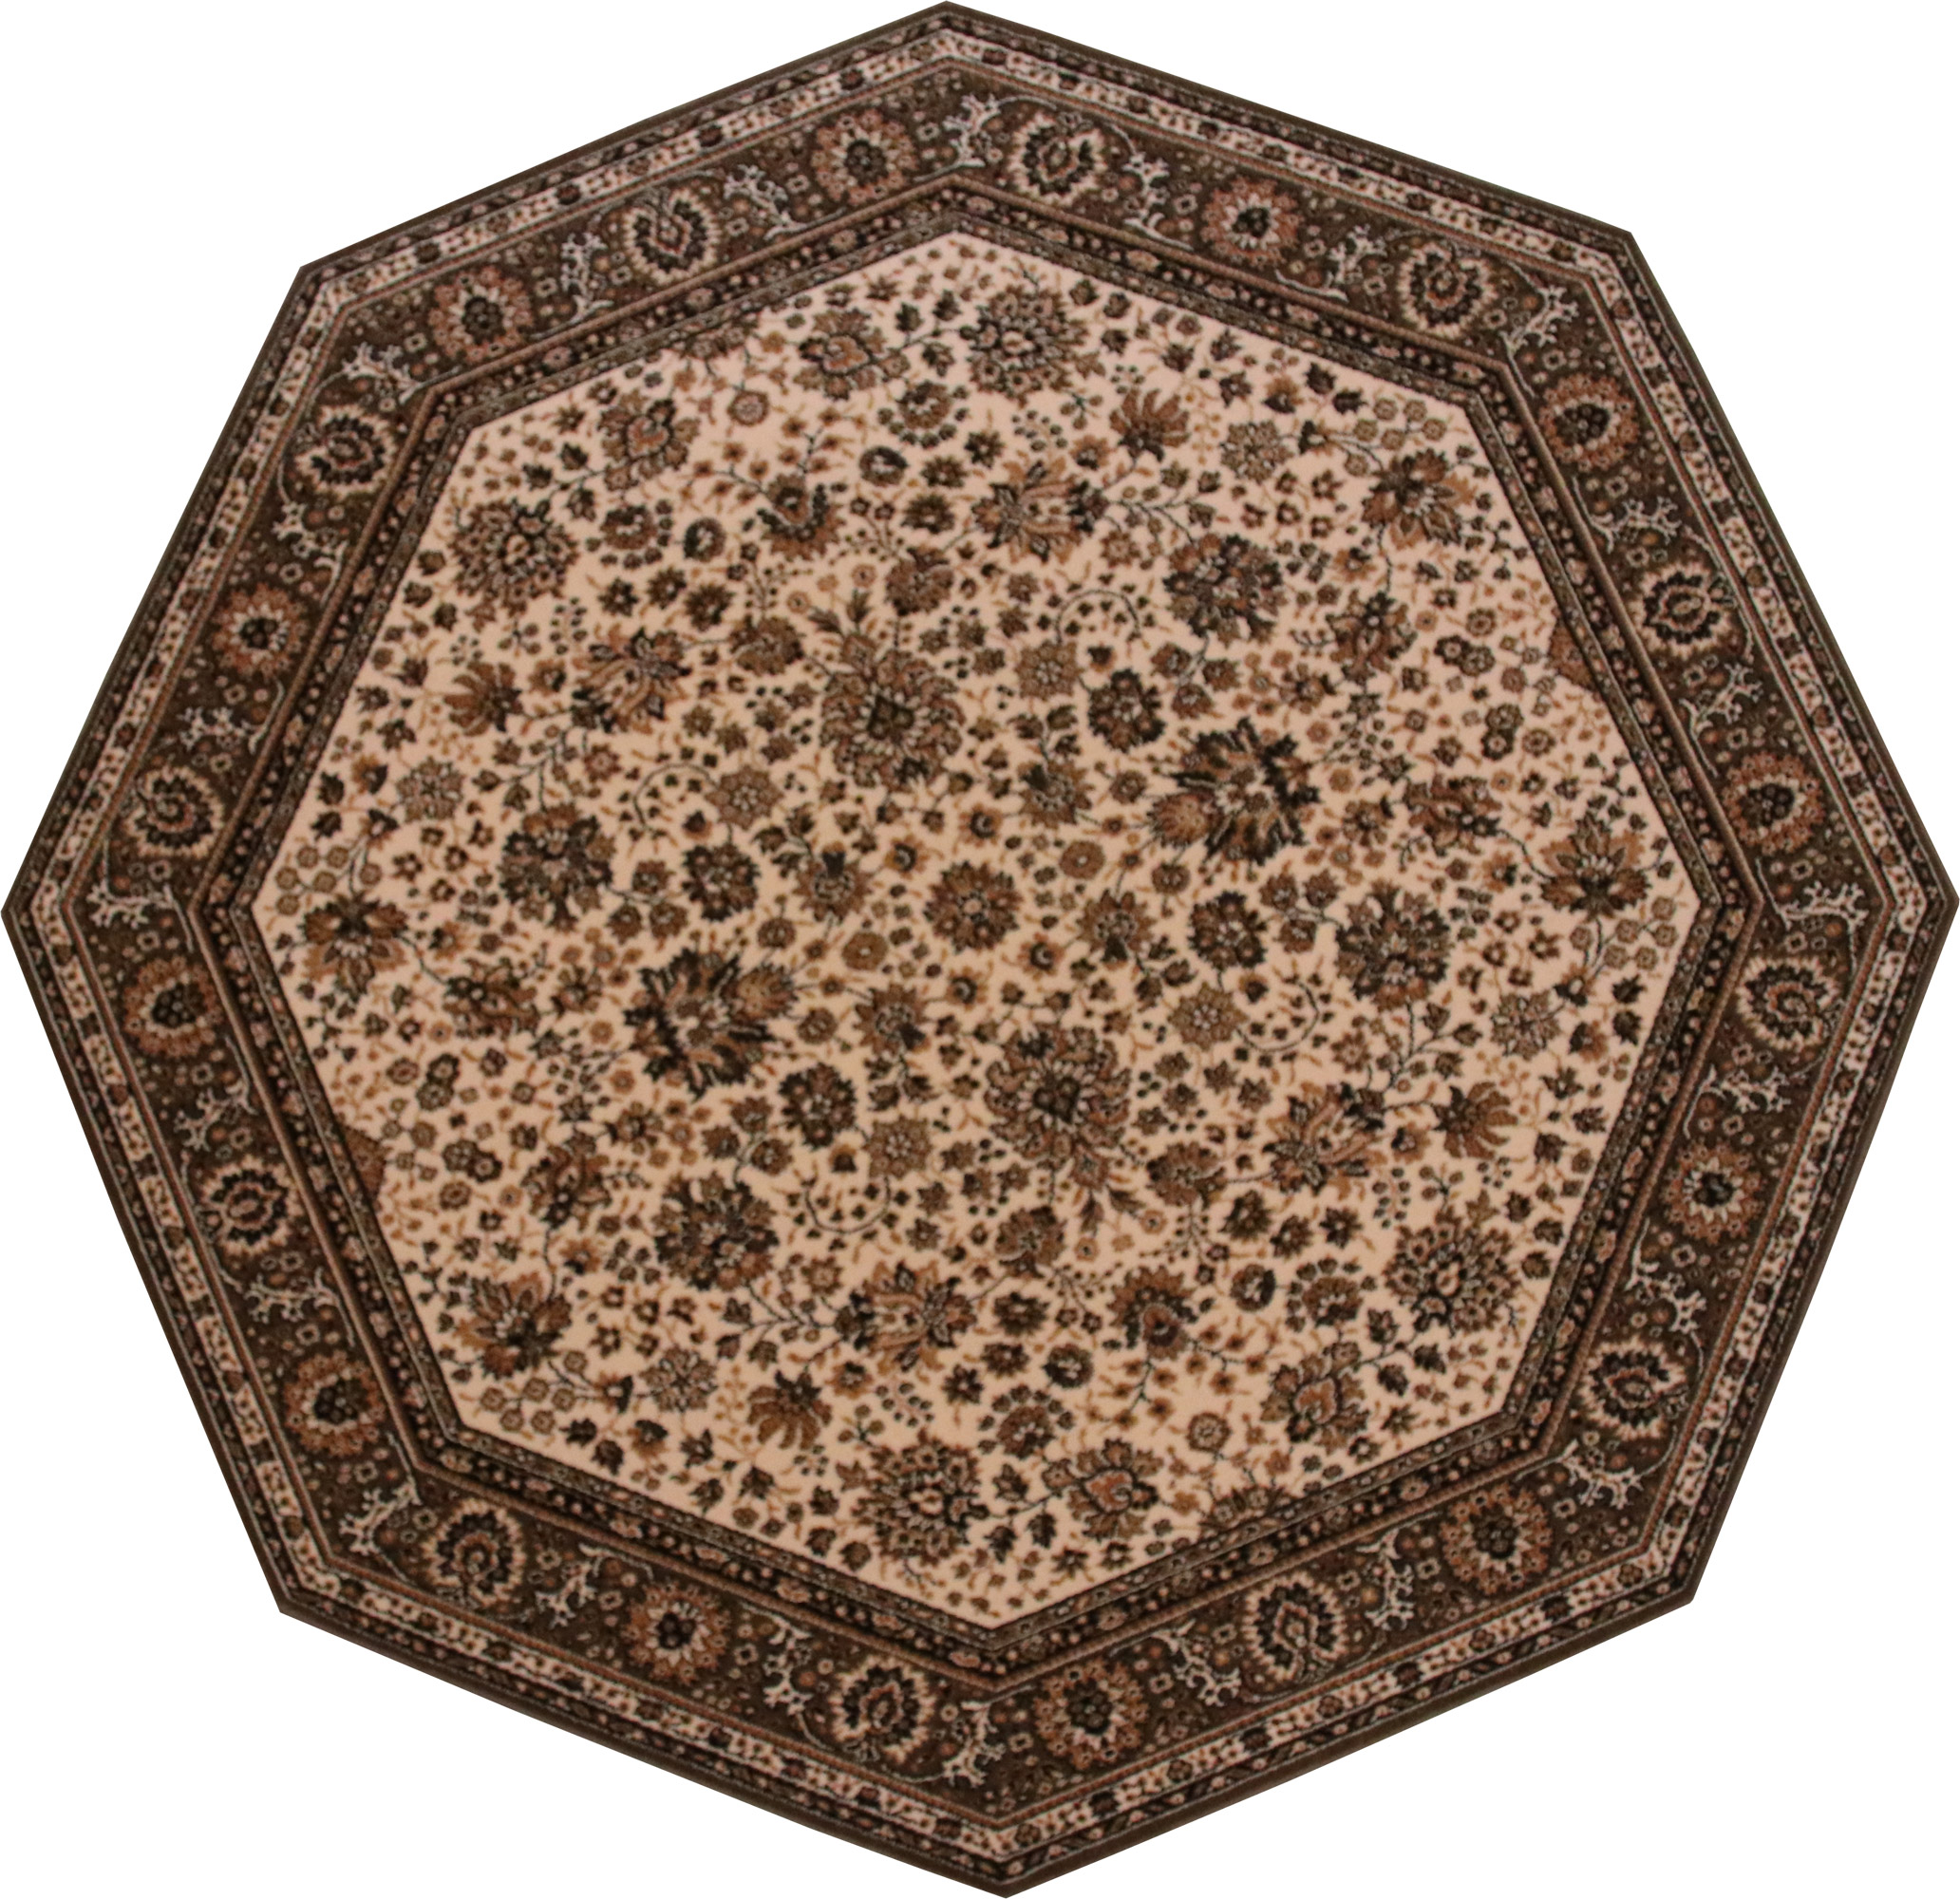 Teppich Lano Royal Klassisch Orientalisch braun/geige 170cm achteckig